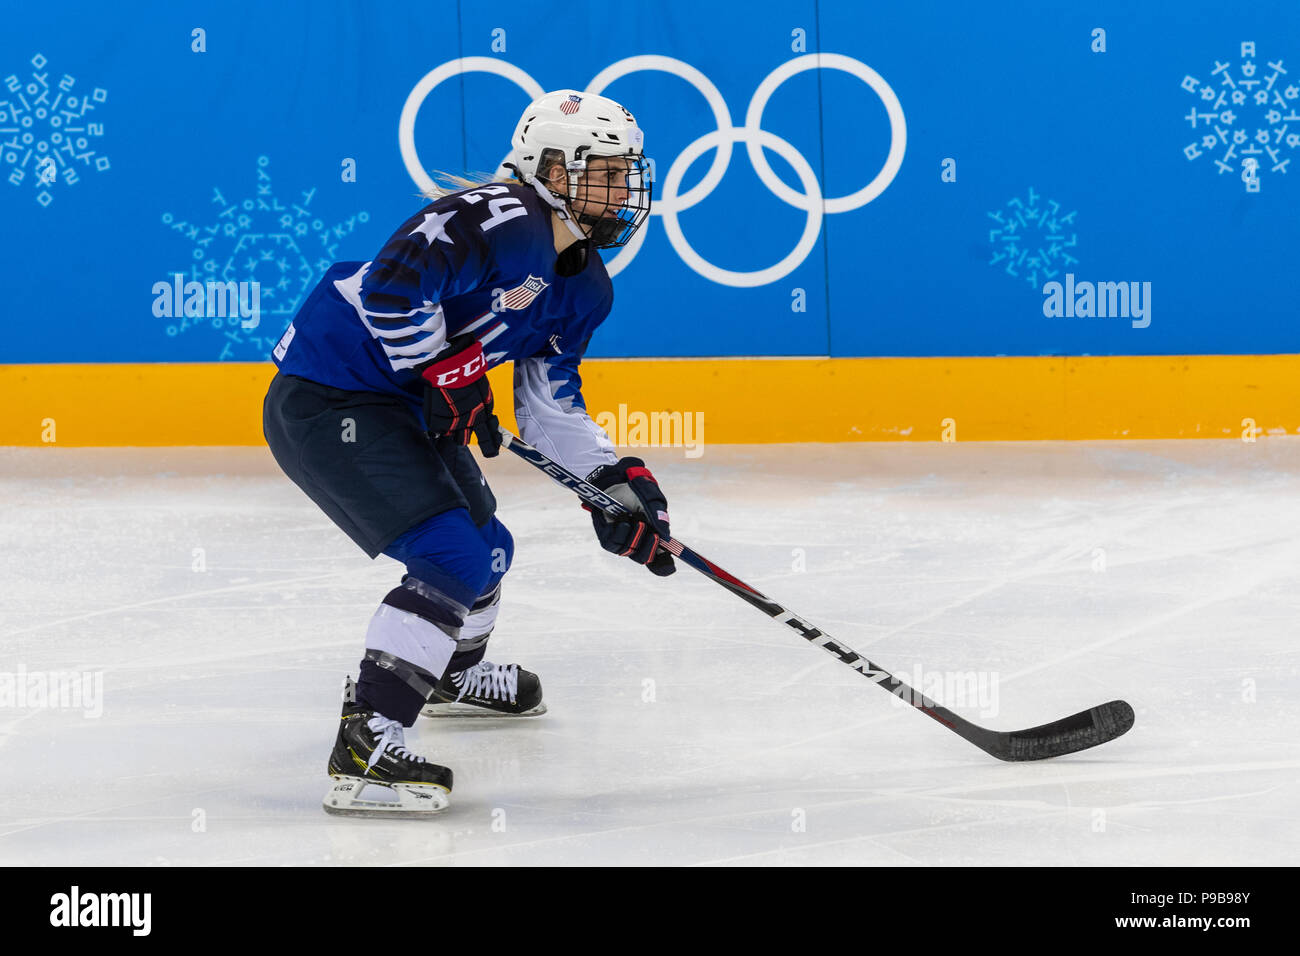 Dani Cameranesi (USA) au cours de la médaille d'or jeu de hockey sur glace Etats-unis contre le Canada aux Jeux Olympiques d'hiver de PyeongChang 2018 Banque D'Images